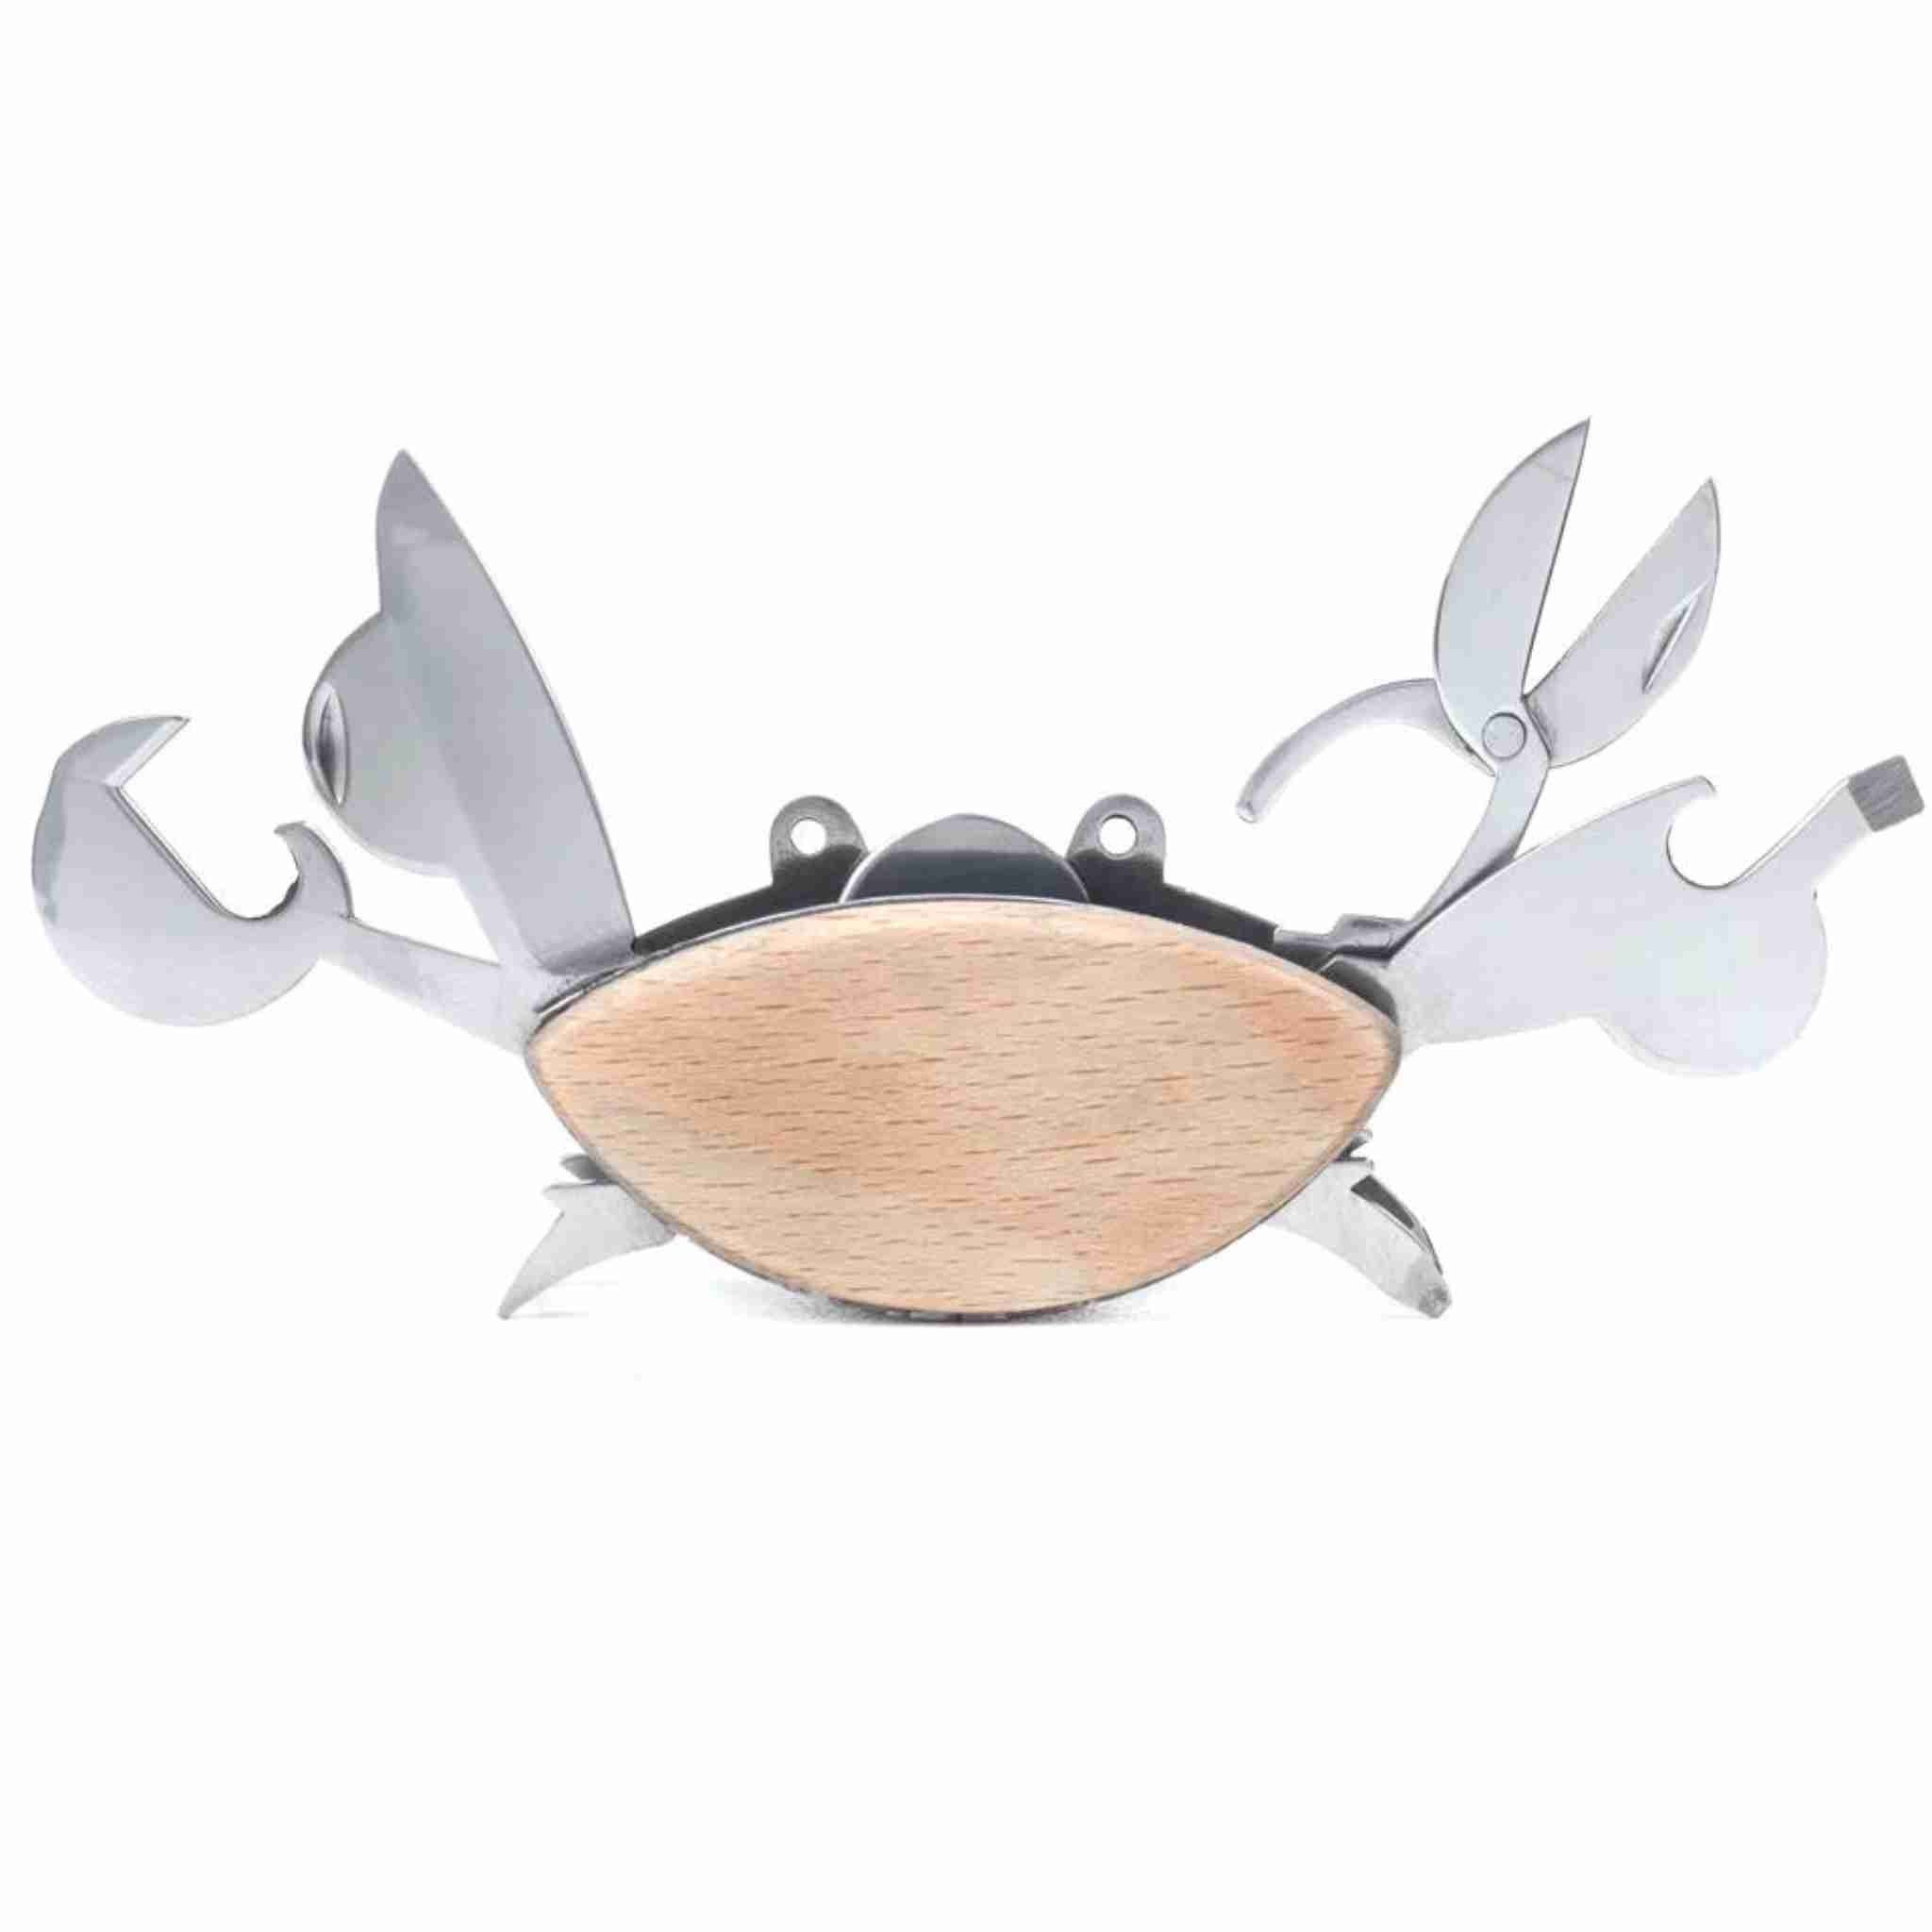 crab multi tool set